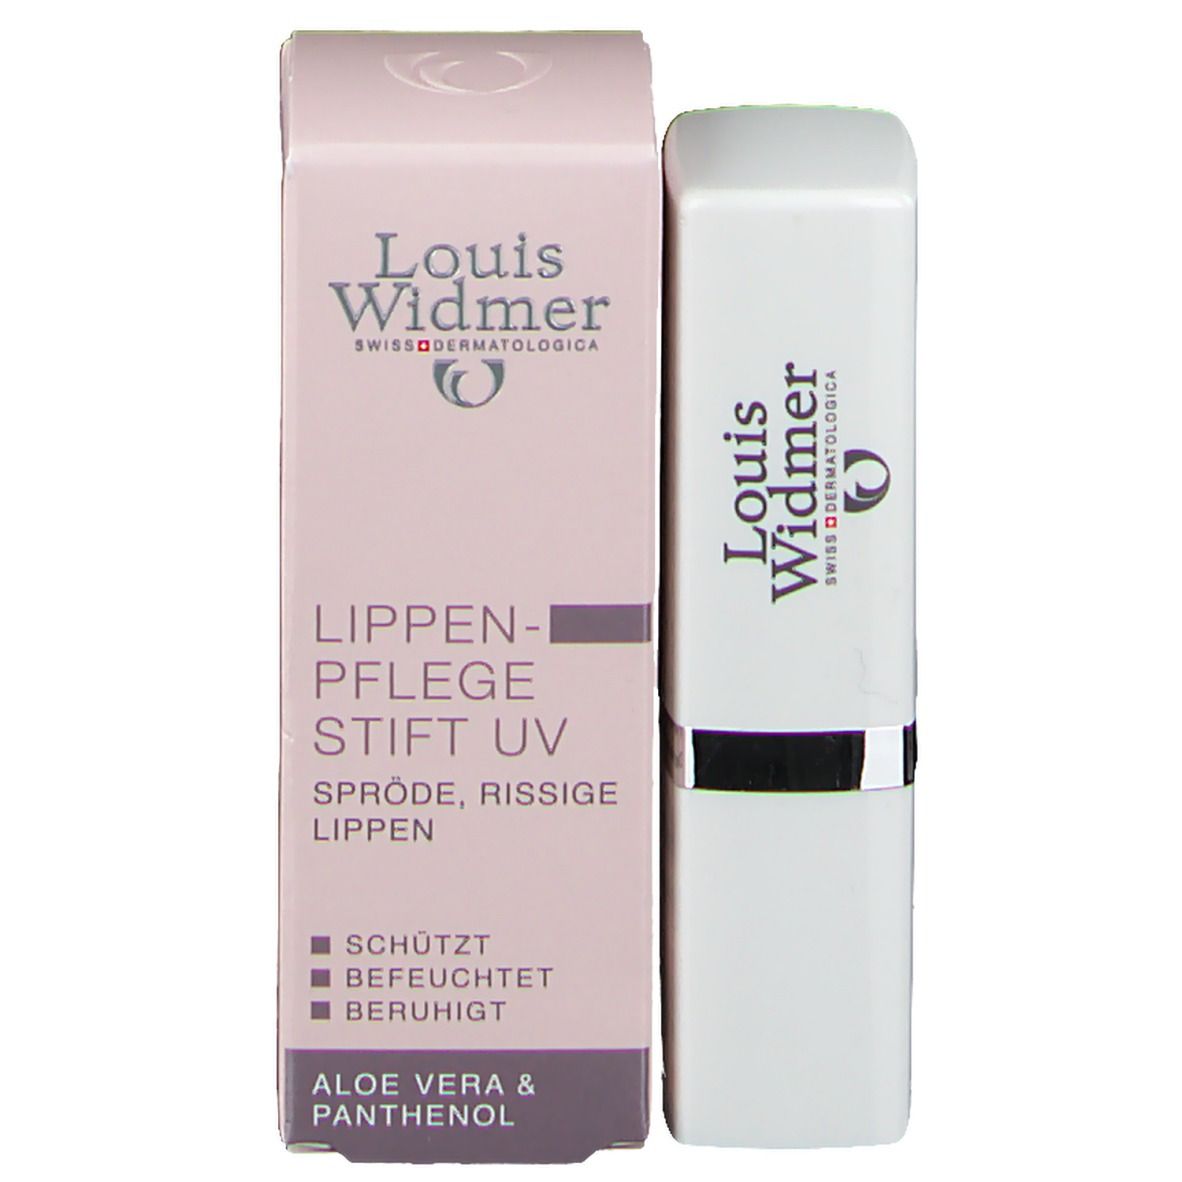 Louis Widmer Lippenpflege Stift UV